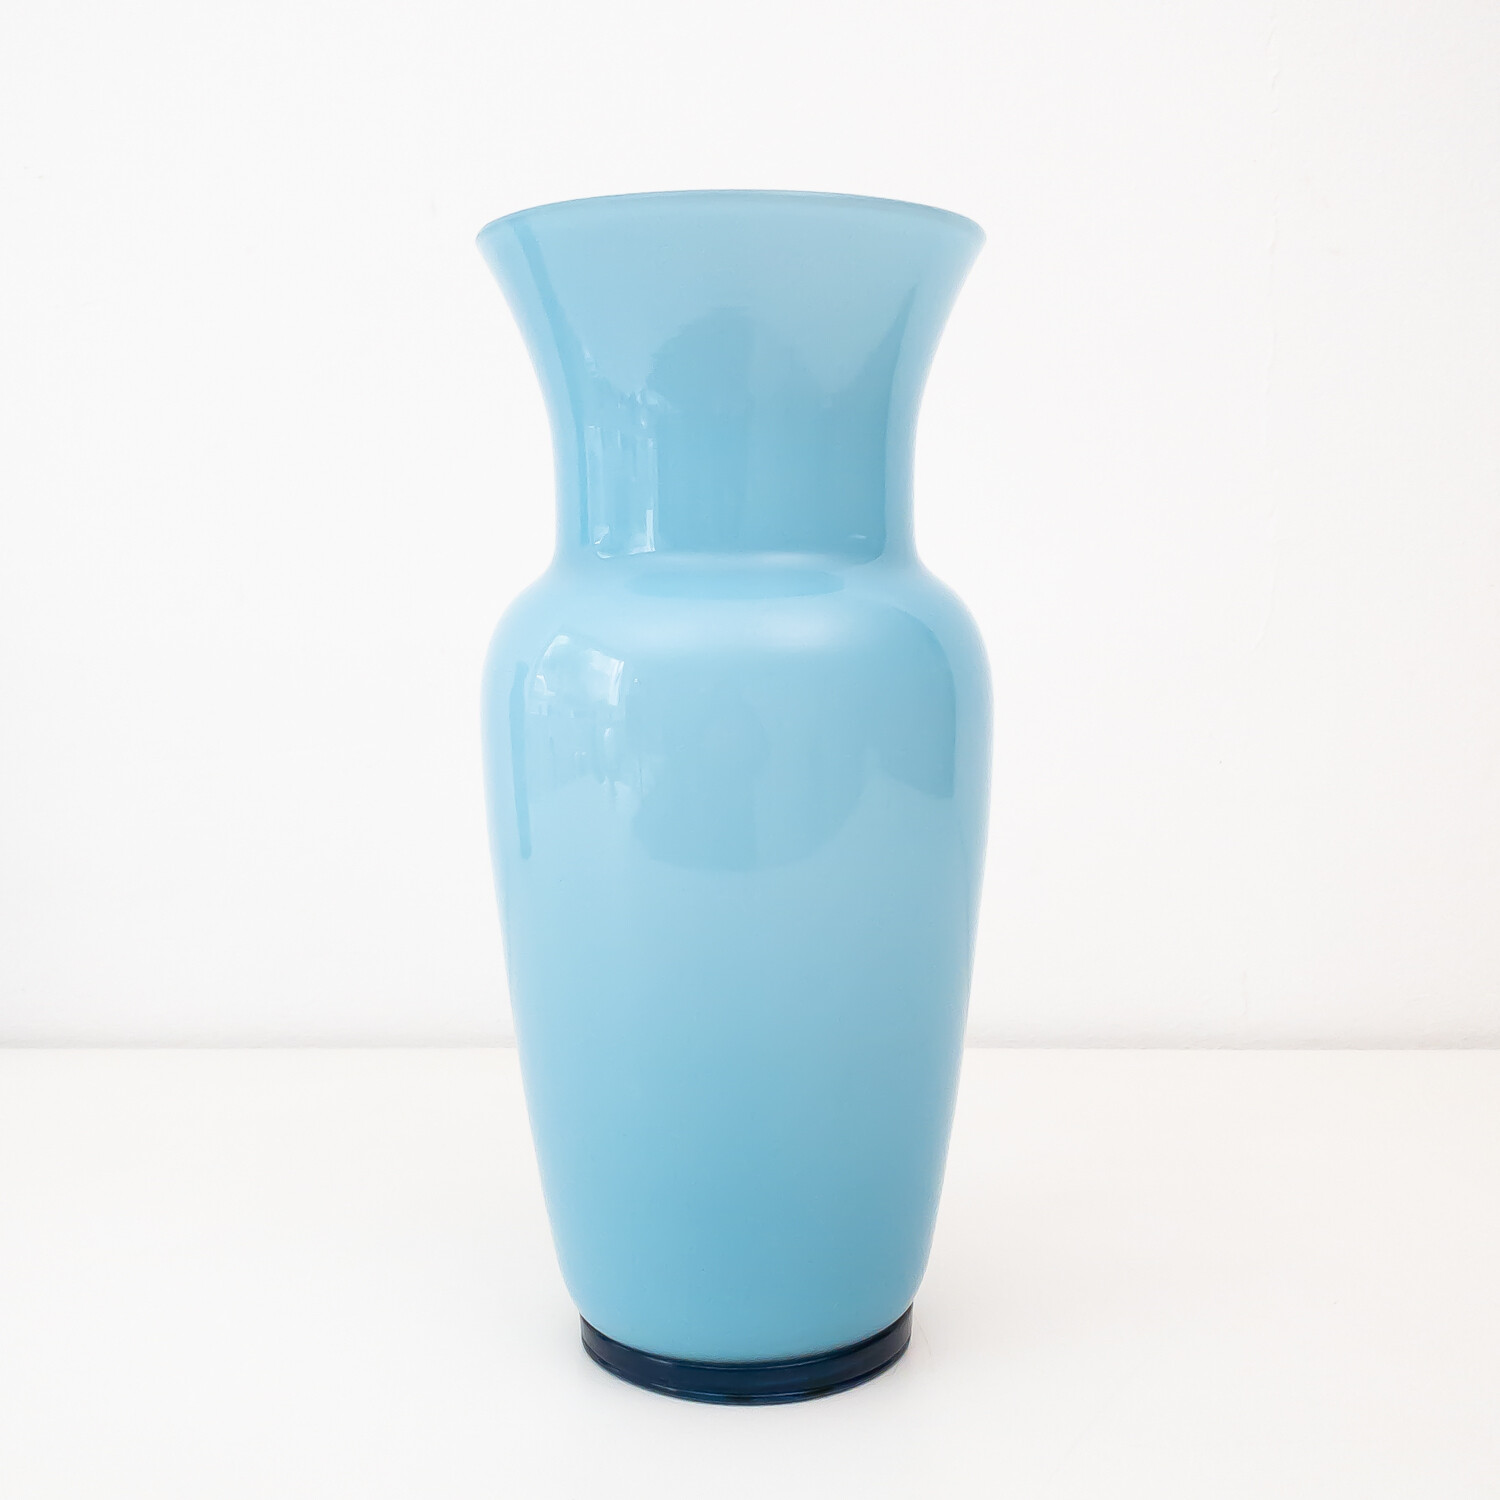 Opaline Murano glass vase by Paolo Venini for Venini